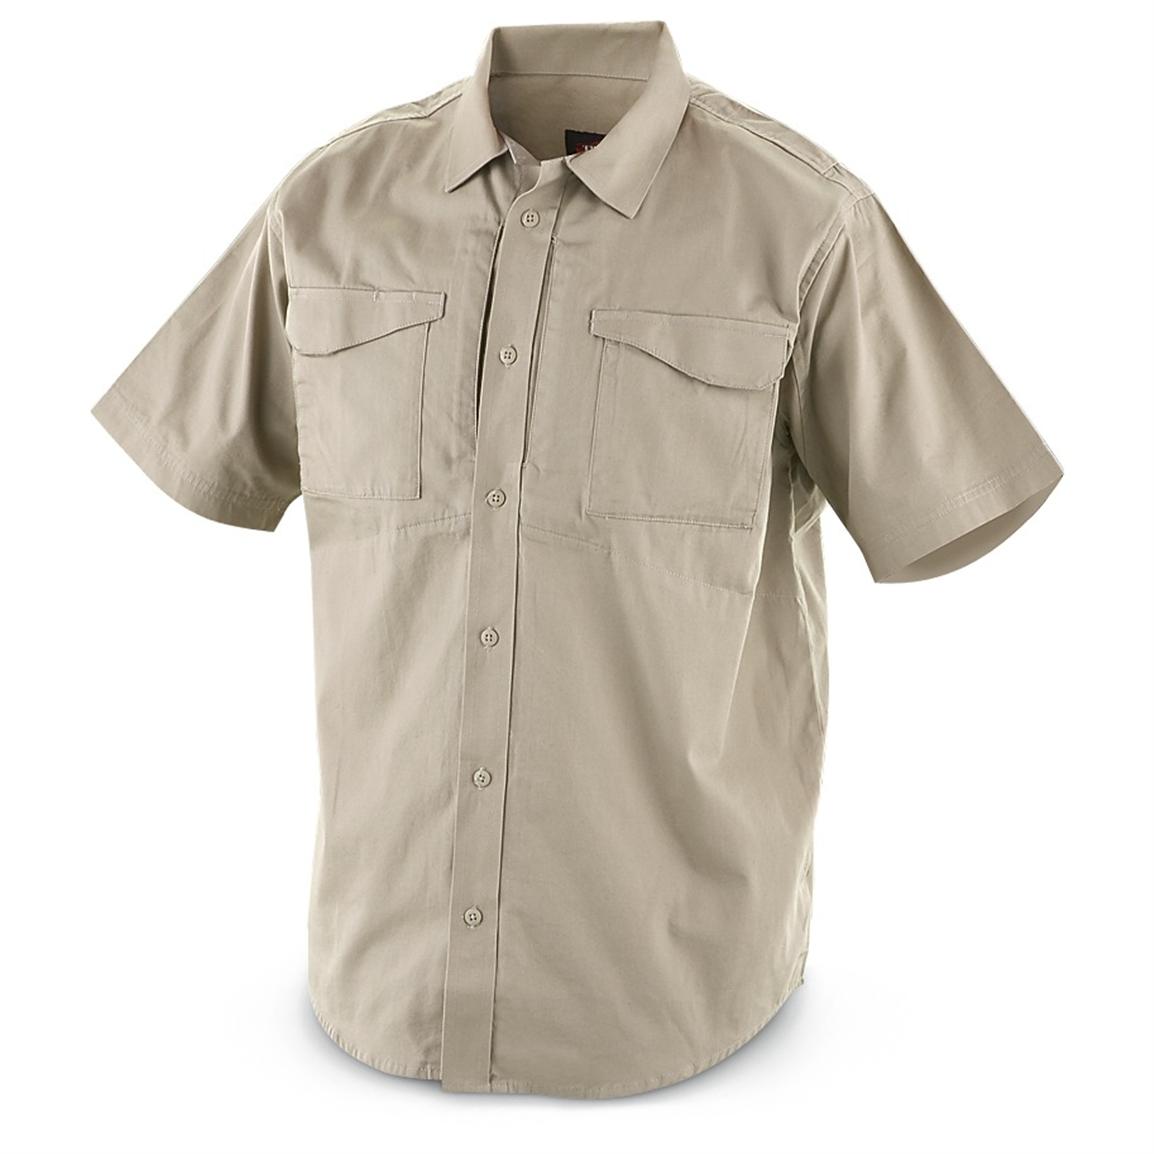 TRU - SPEC® 24 - 7 Series® Field Shirt - 203242, Shirts at Sportsman's ...